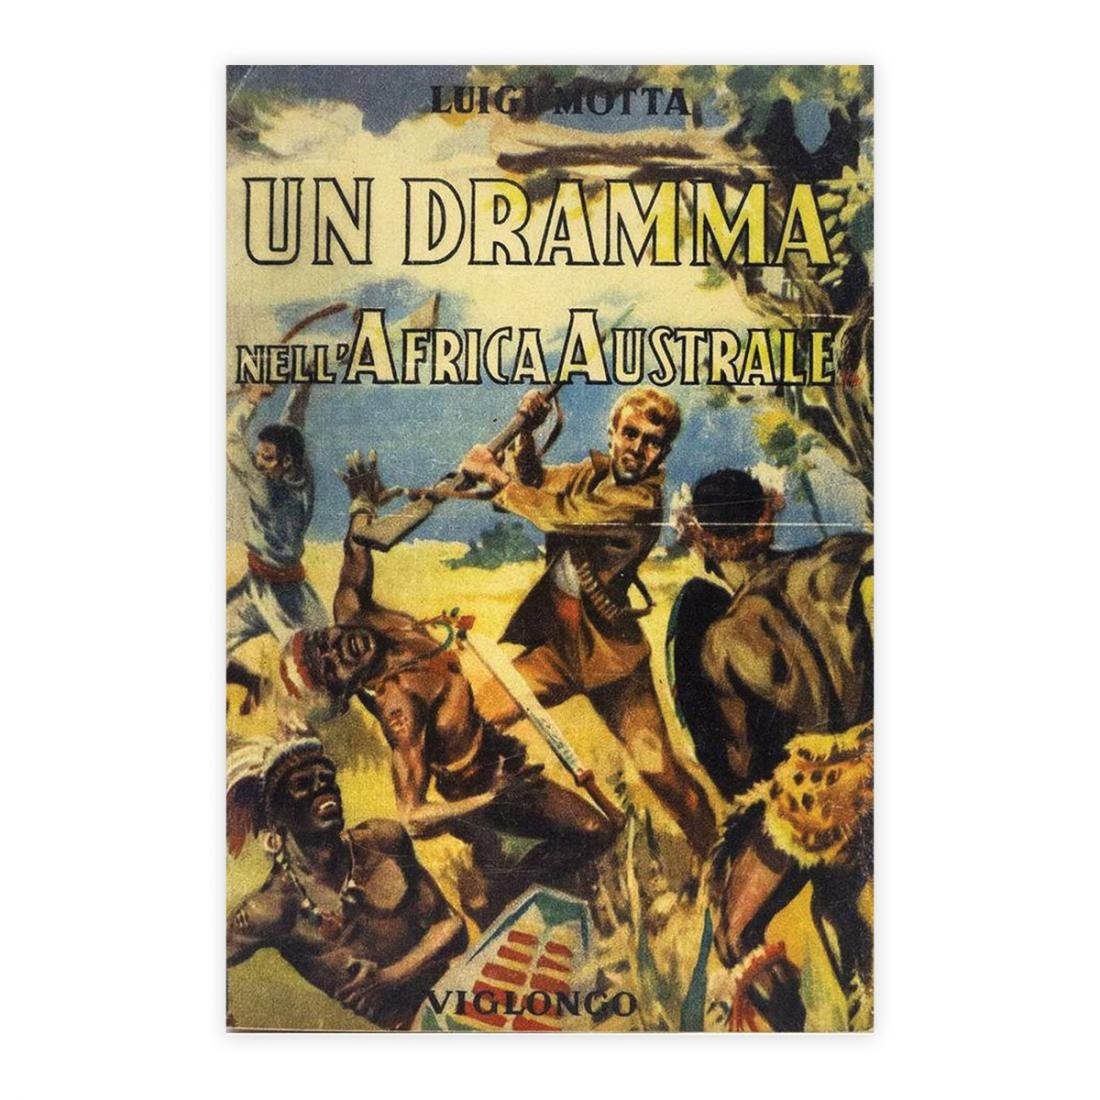 Luigi Motta – Un dramma nell'Africa Australe (Andrea Viglongo & C. Editori, Torino 1932)